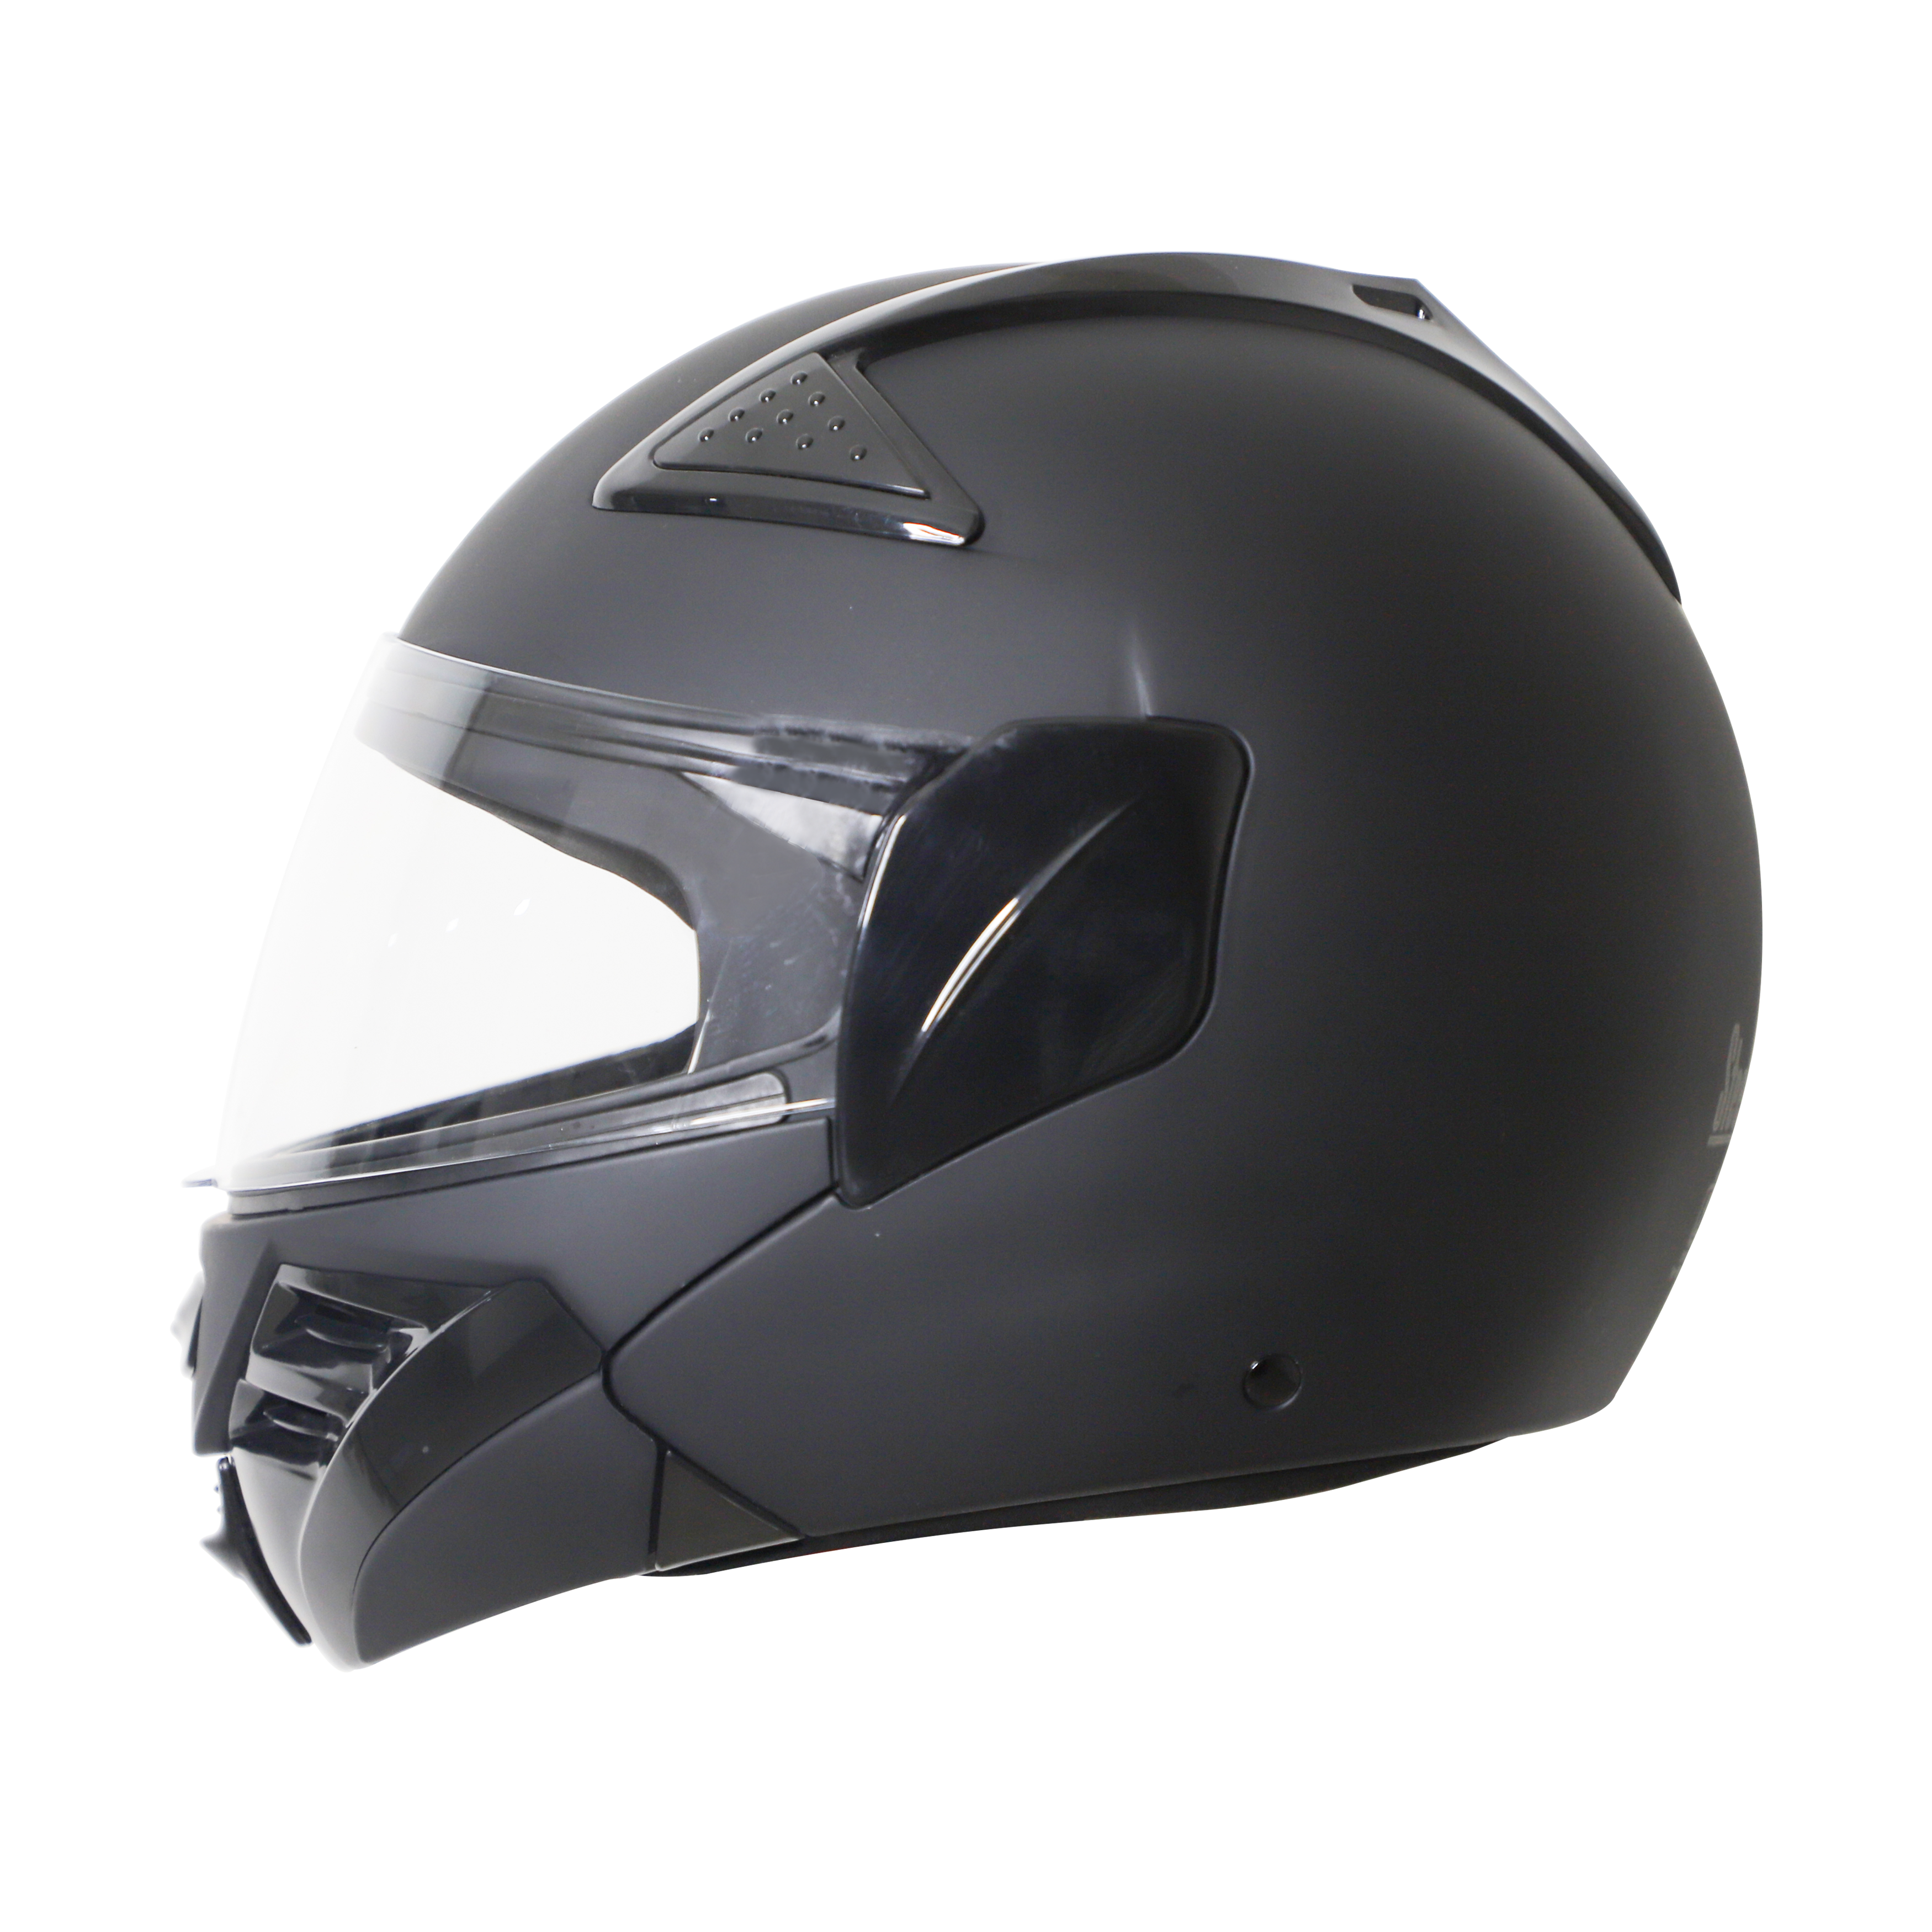 Steelbird SB-34 TRX ISI Certified Flip-Up Helmet For Men And Women (Matt Axis Grey With Clear Visor)